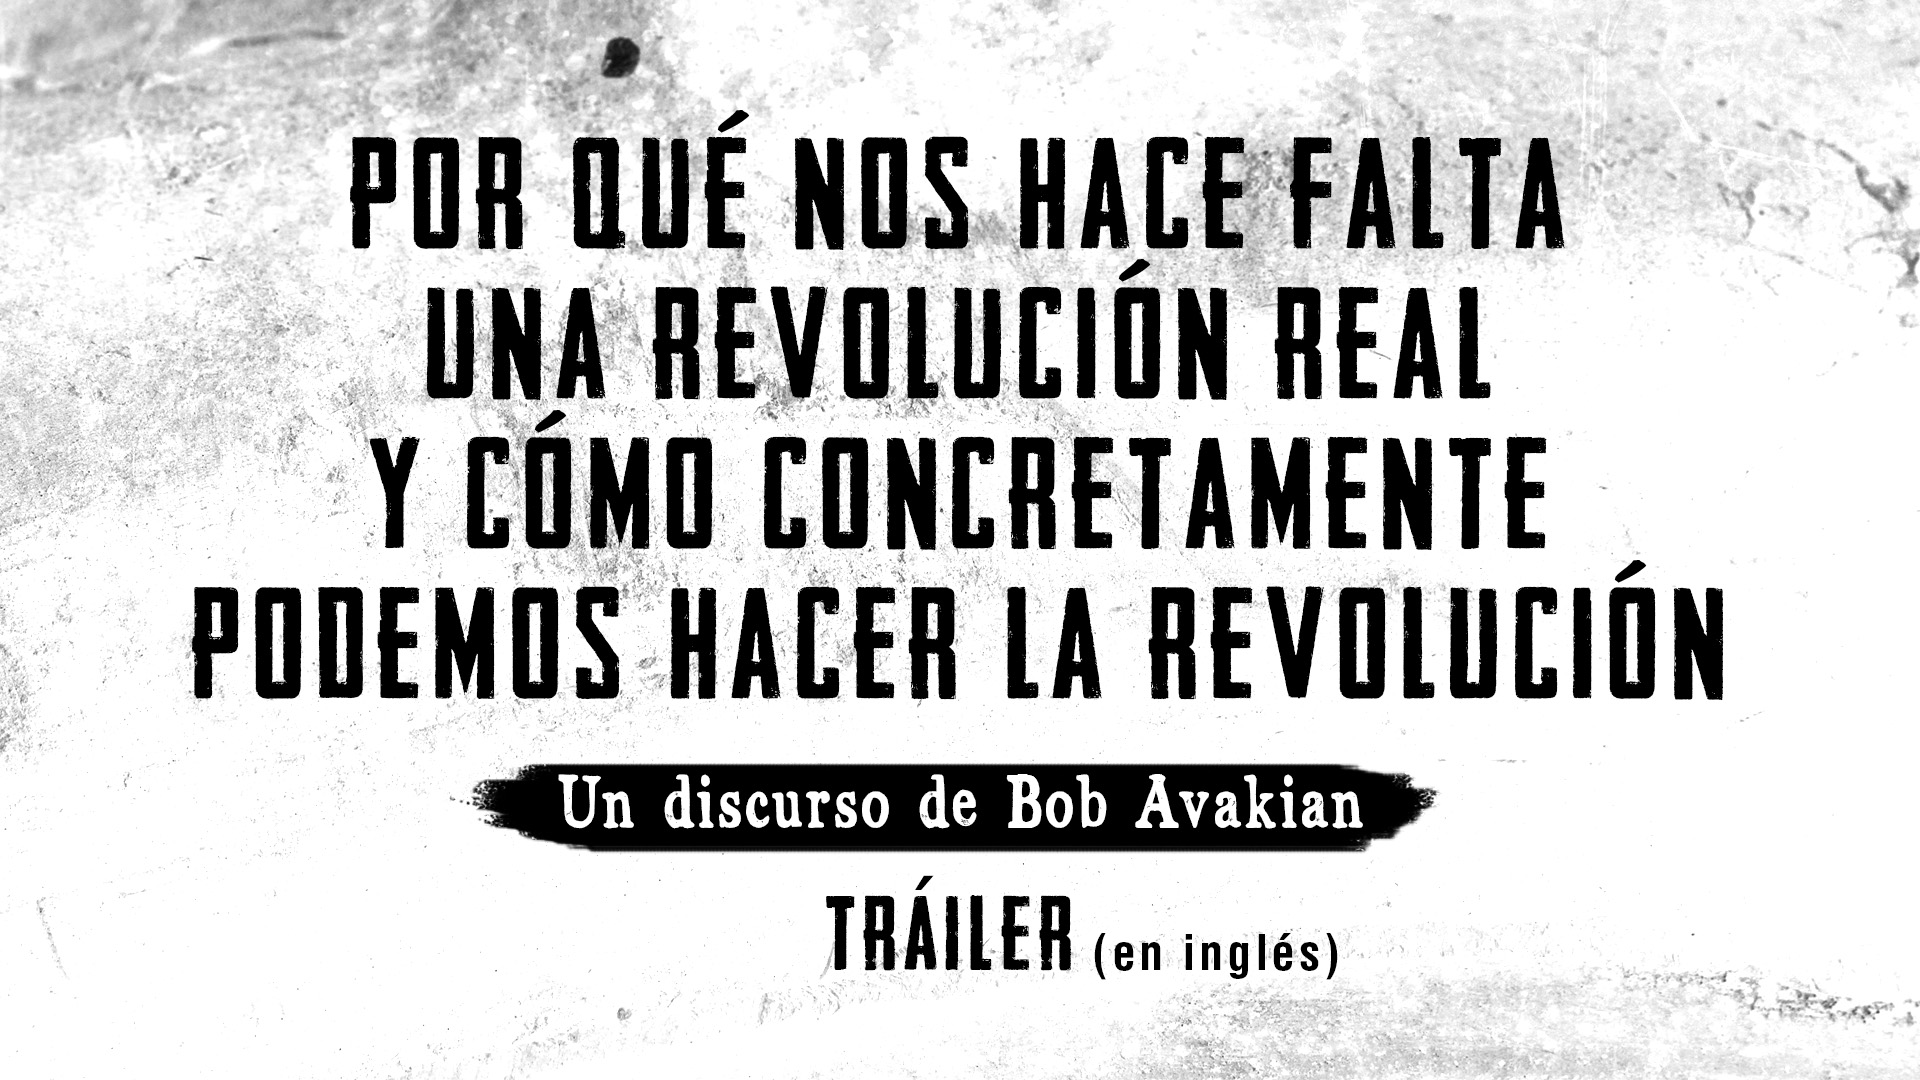 POR QUÉ NOS HACE FALTA UNA REVOLUCIÓN REAL Y CÓMO CONCRETAMENTE PODEMOS HACER LA REVOLUCIÓN - Un discurso de Bob Avakian